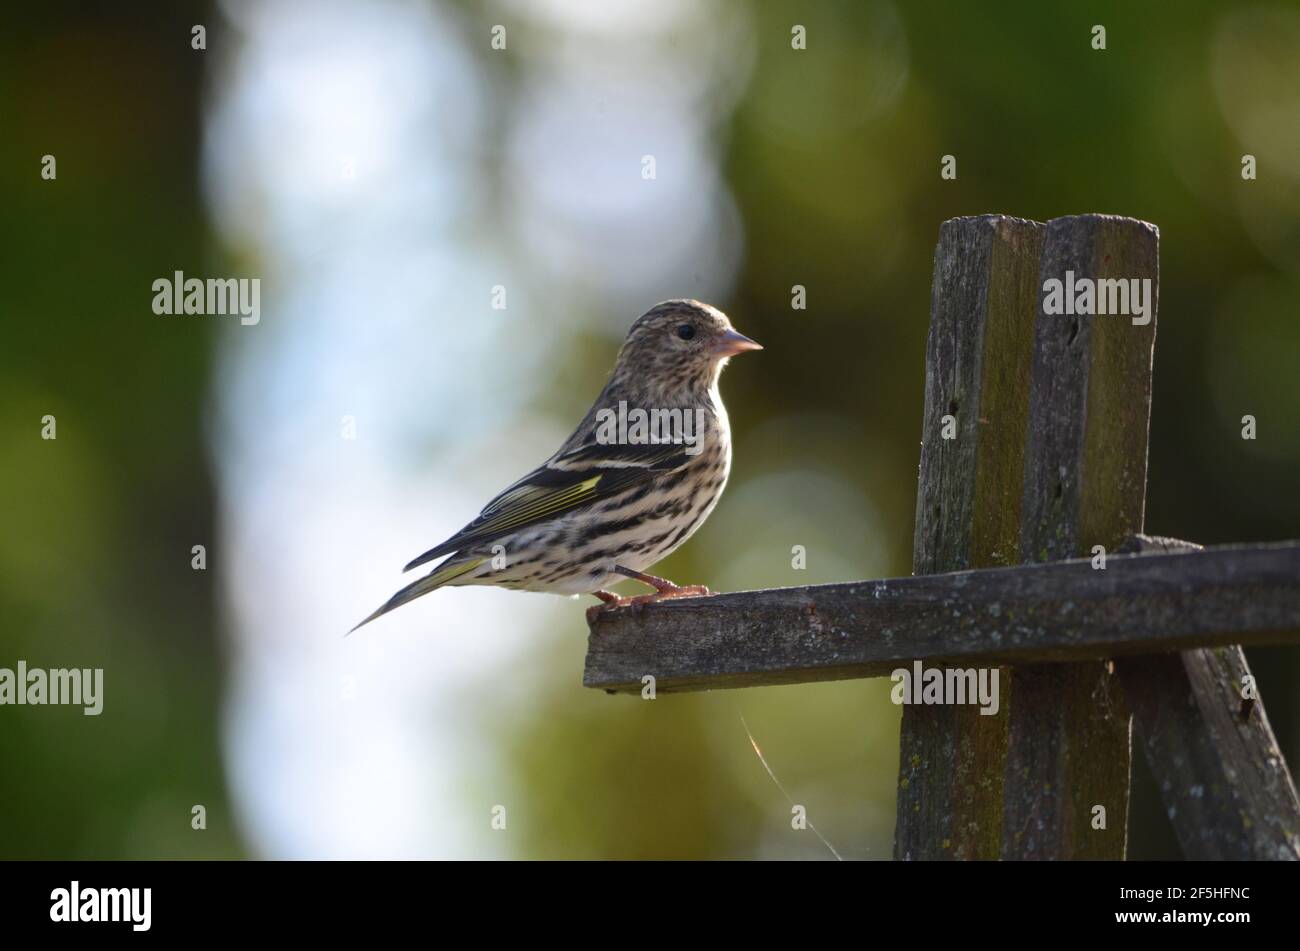 song sparrow on a feeder Melospiza melodia Stock Photo